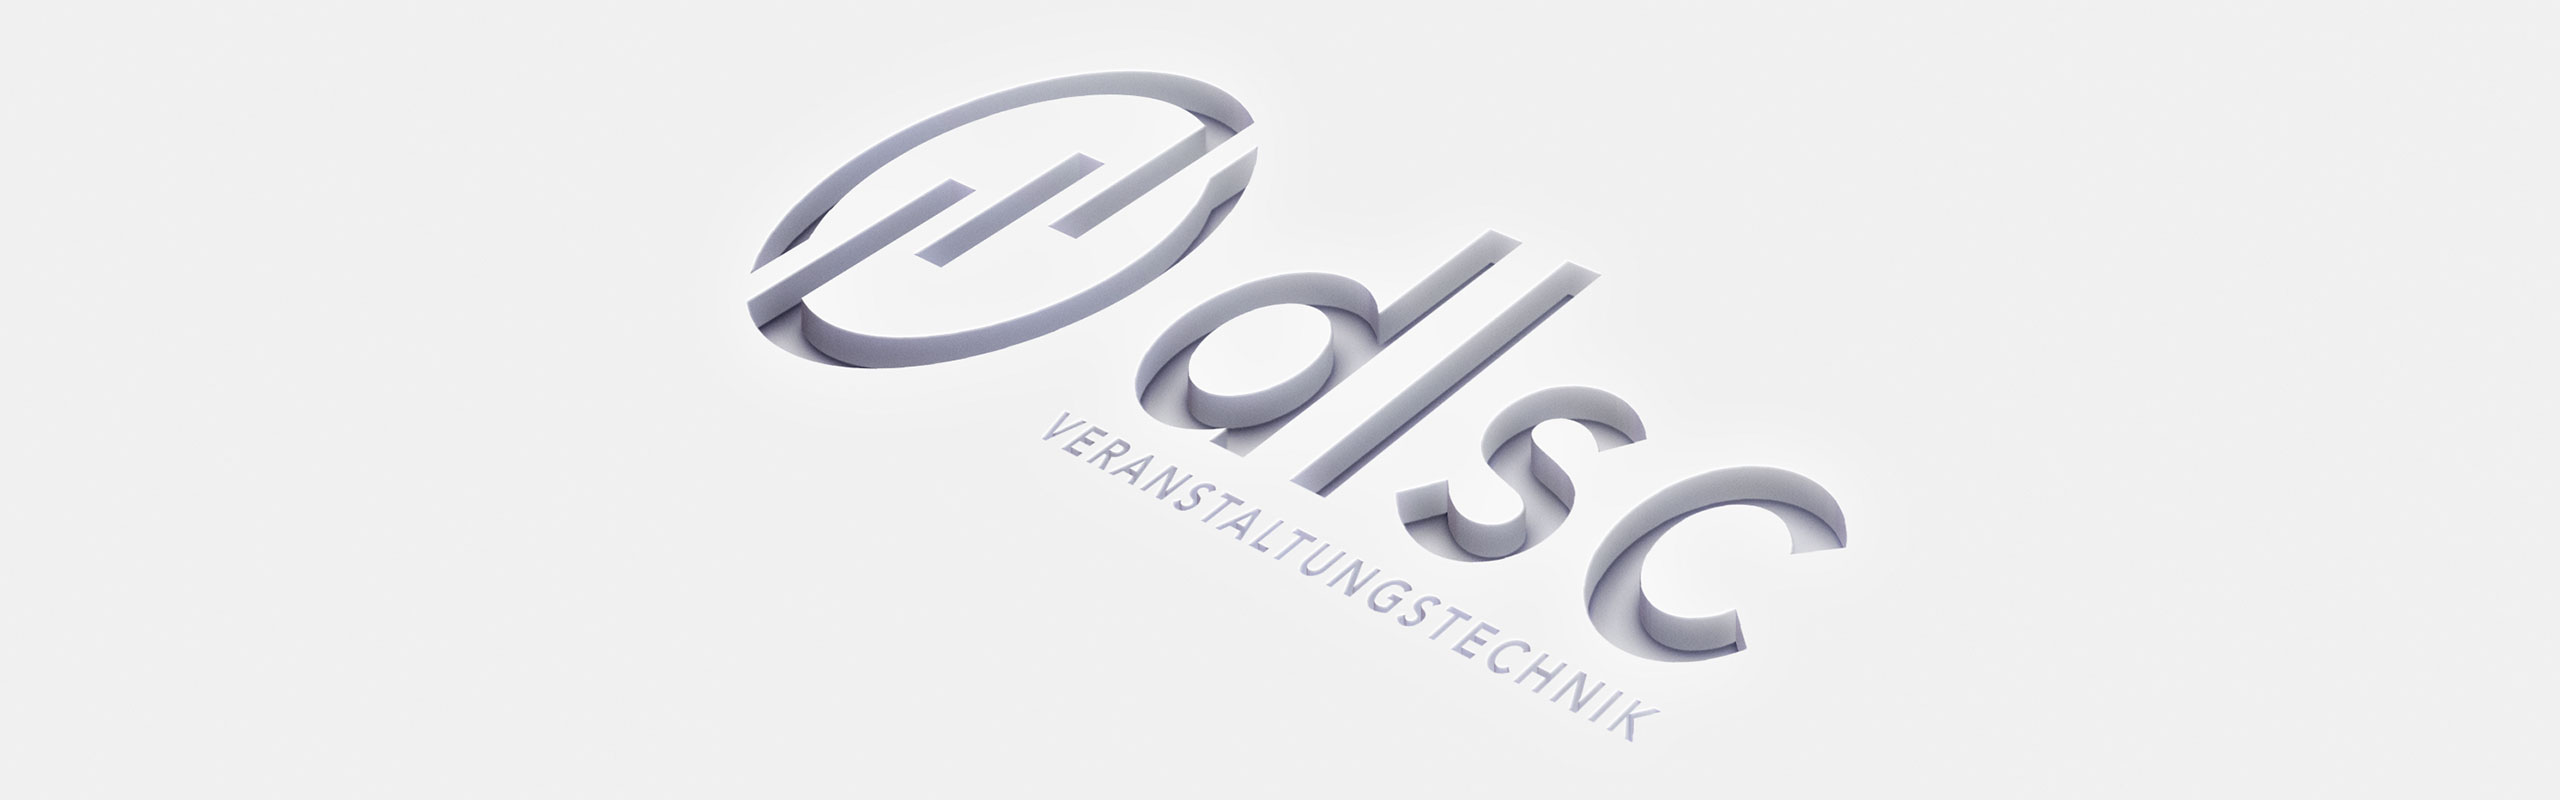 DLSC Veranstaltungstechnik Logo by Hirschburg Werbeagentur